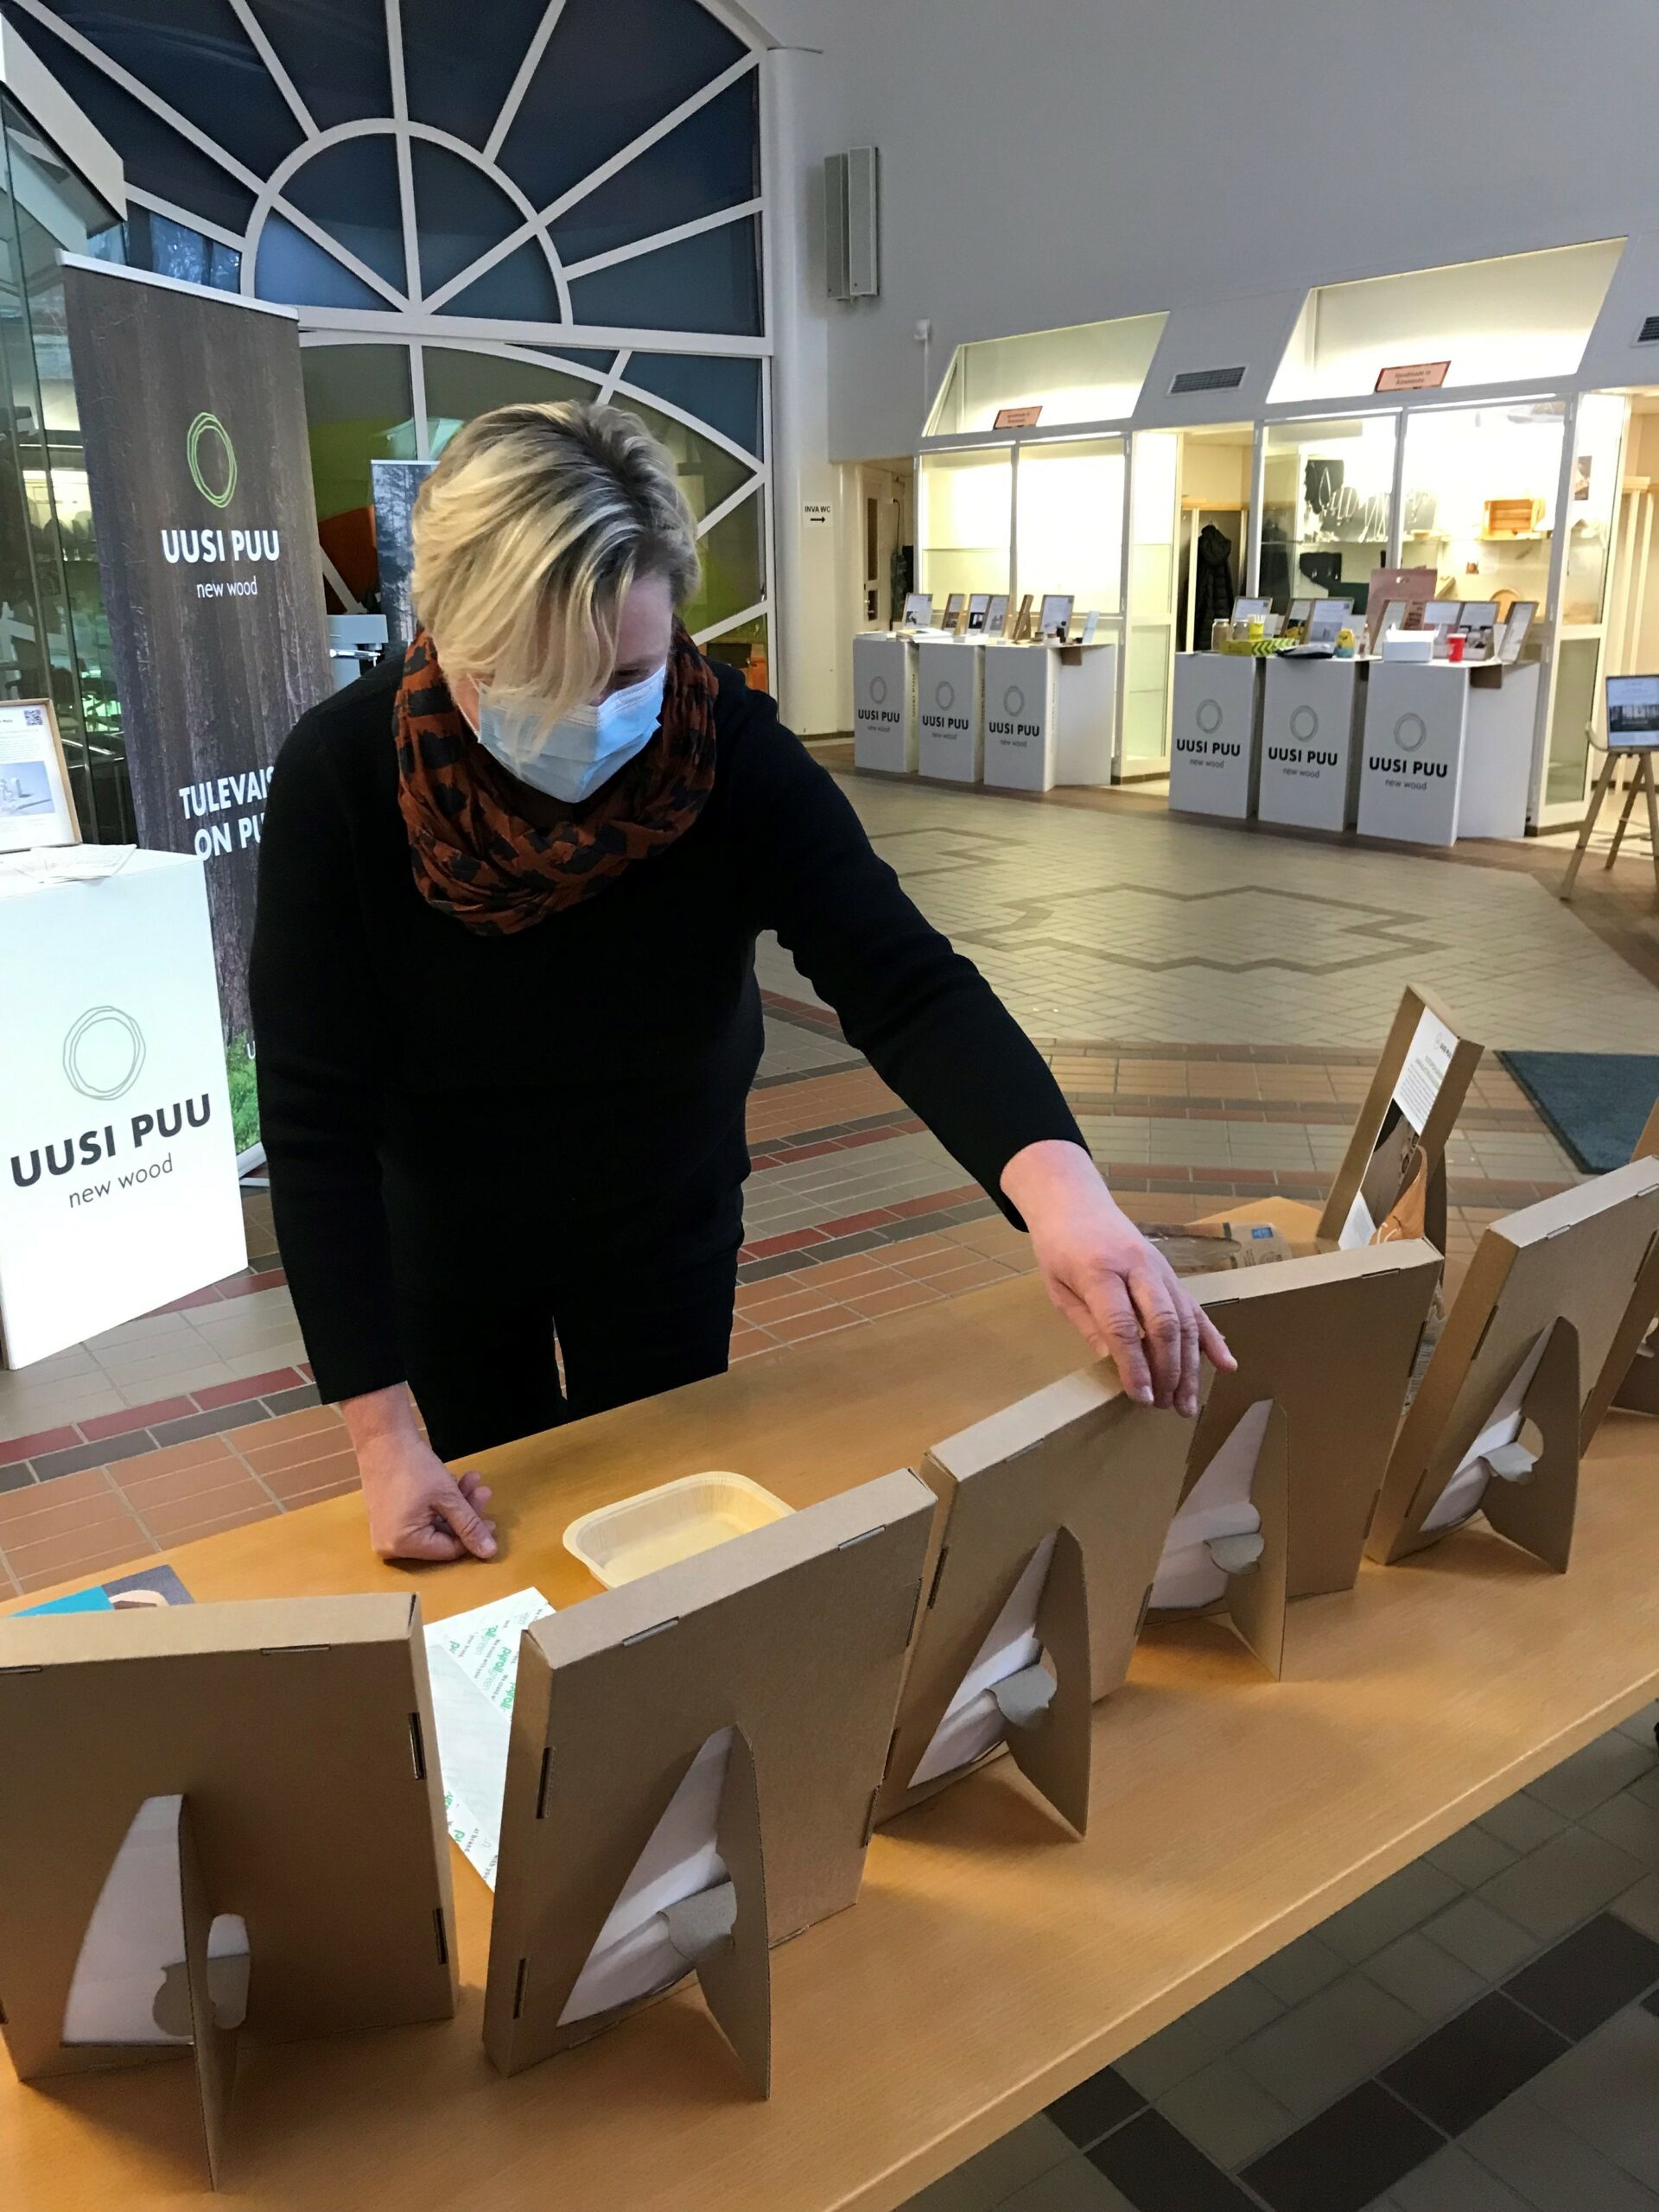 Uusi puu -hankkeen projektipäällikkö Virpi Korhonen asettelee Uusi puu -näyttelyn ratkaisuesimerkkejä pöydälle Äänekosken kaupungintalolla.